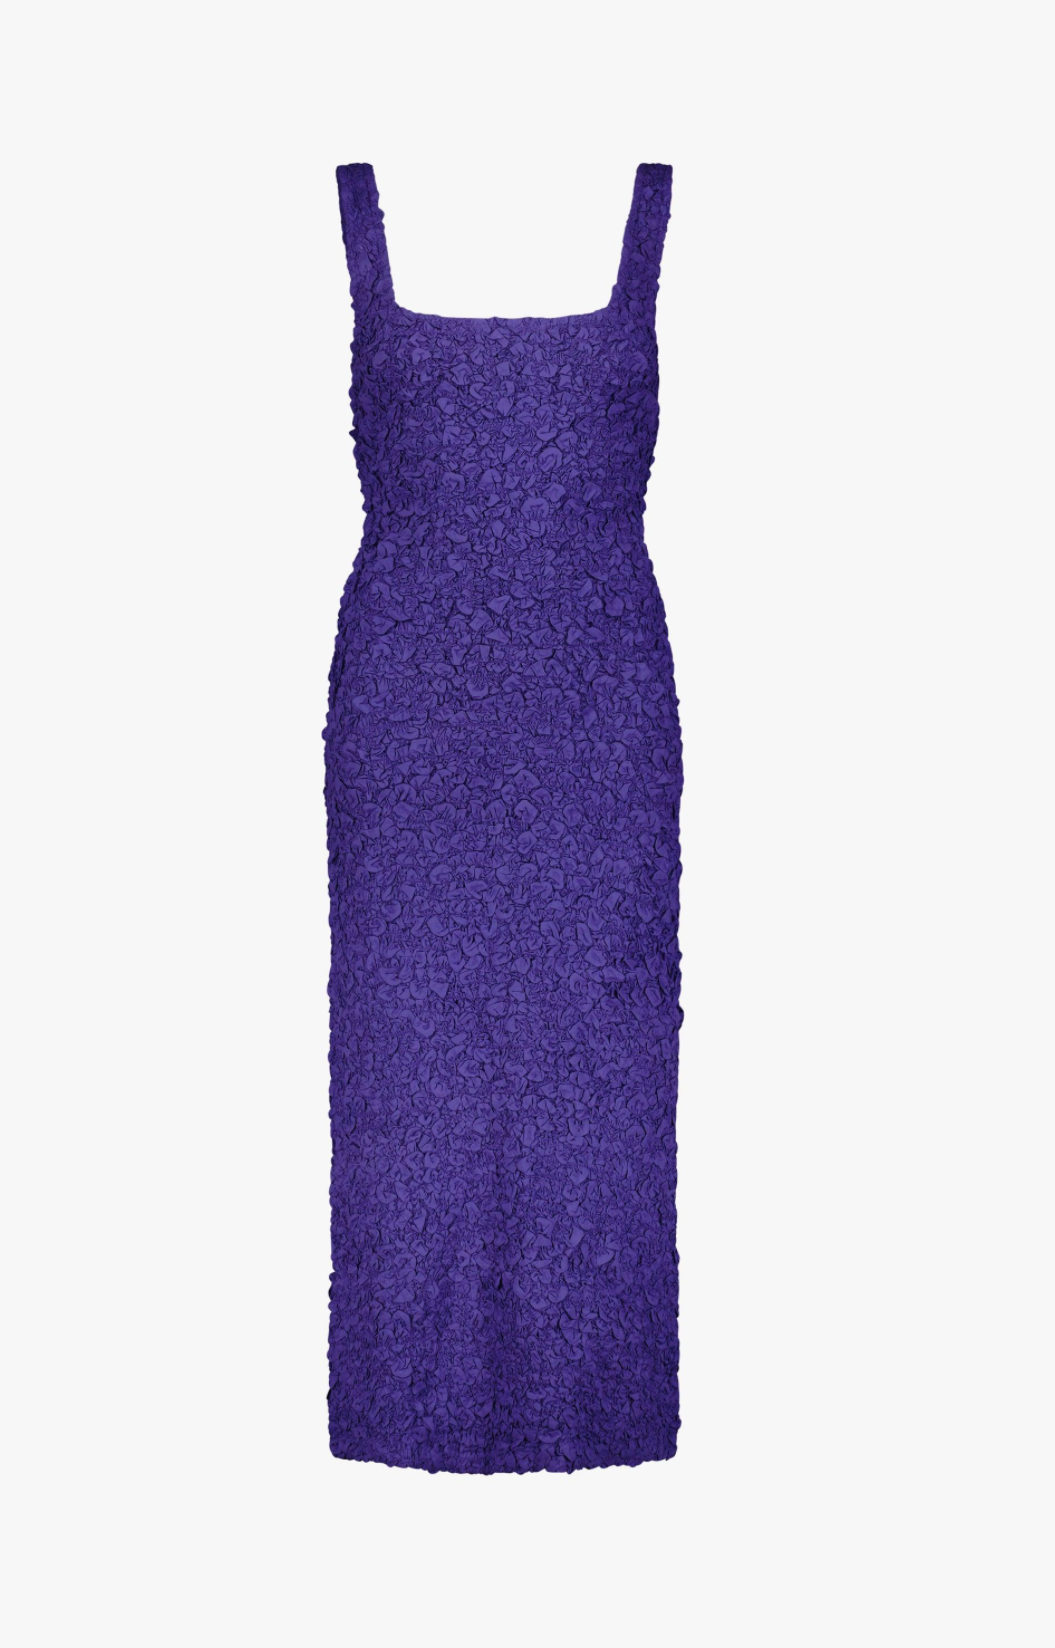 Sloan dress - purple